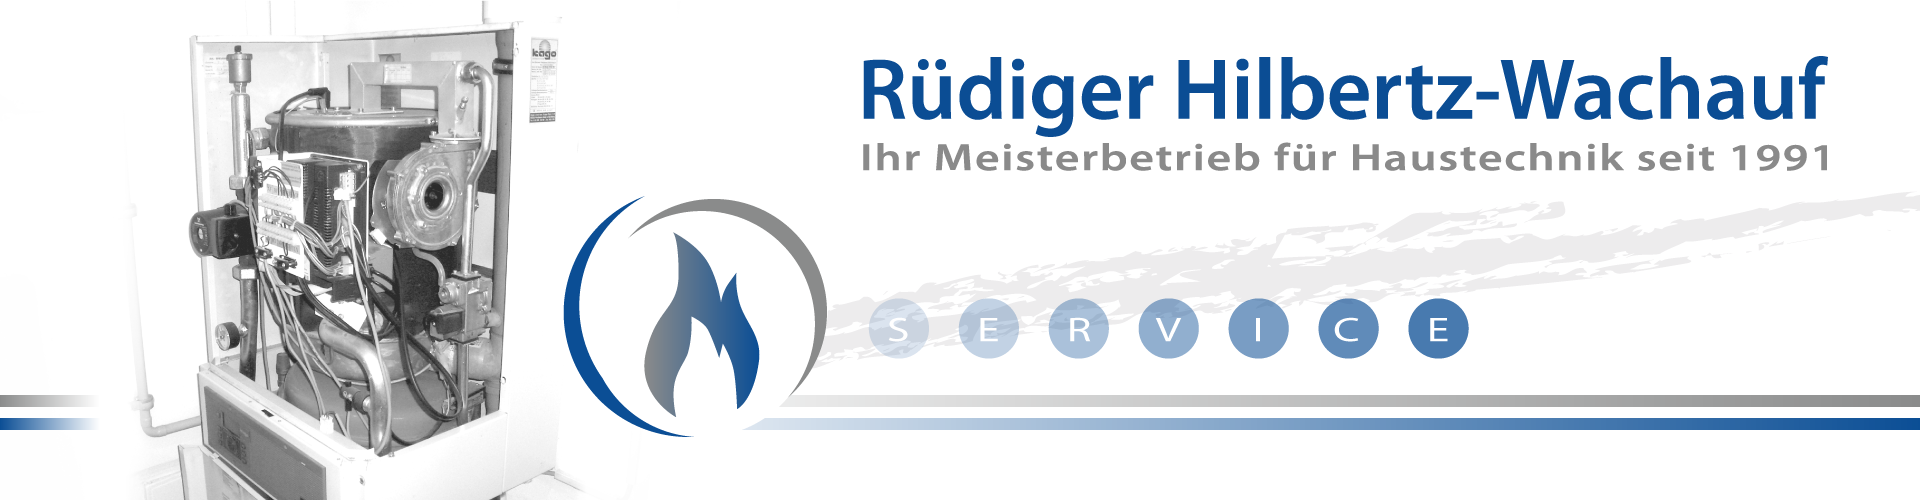 Rüdiger Hilbertz-Wachauf Heizung-Sanitär Meister